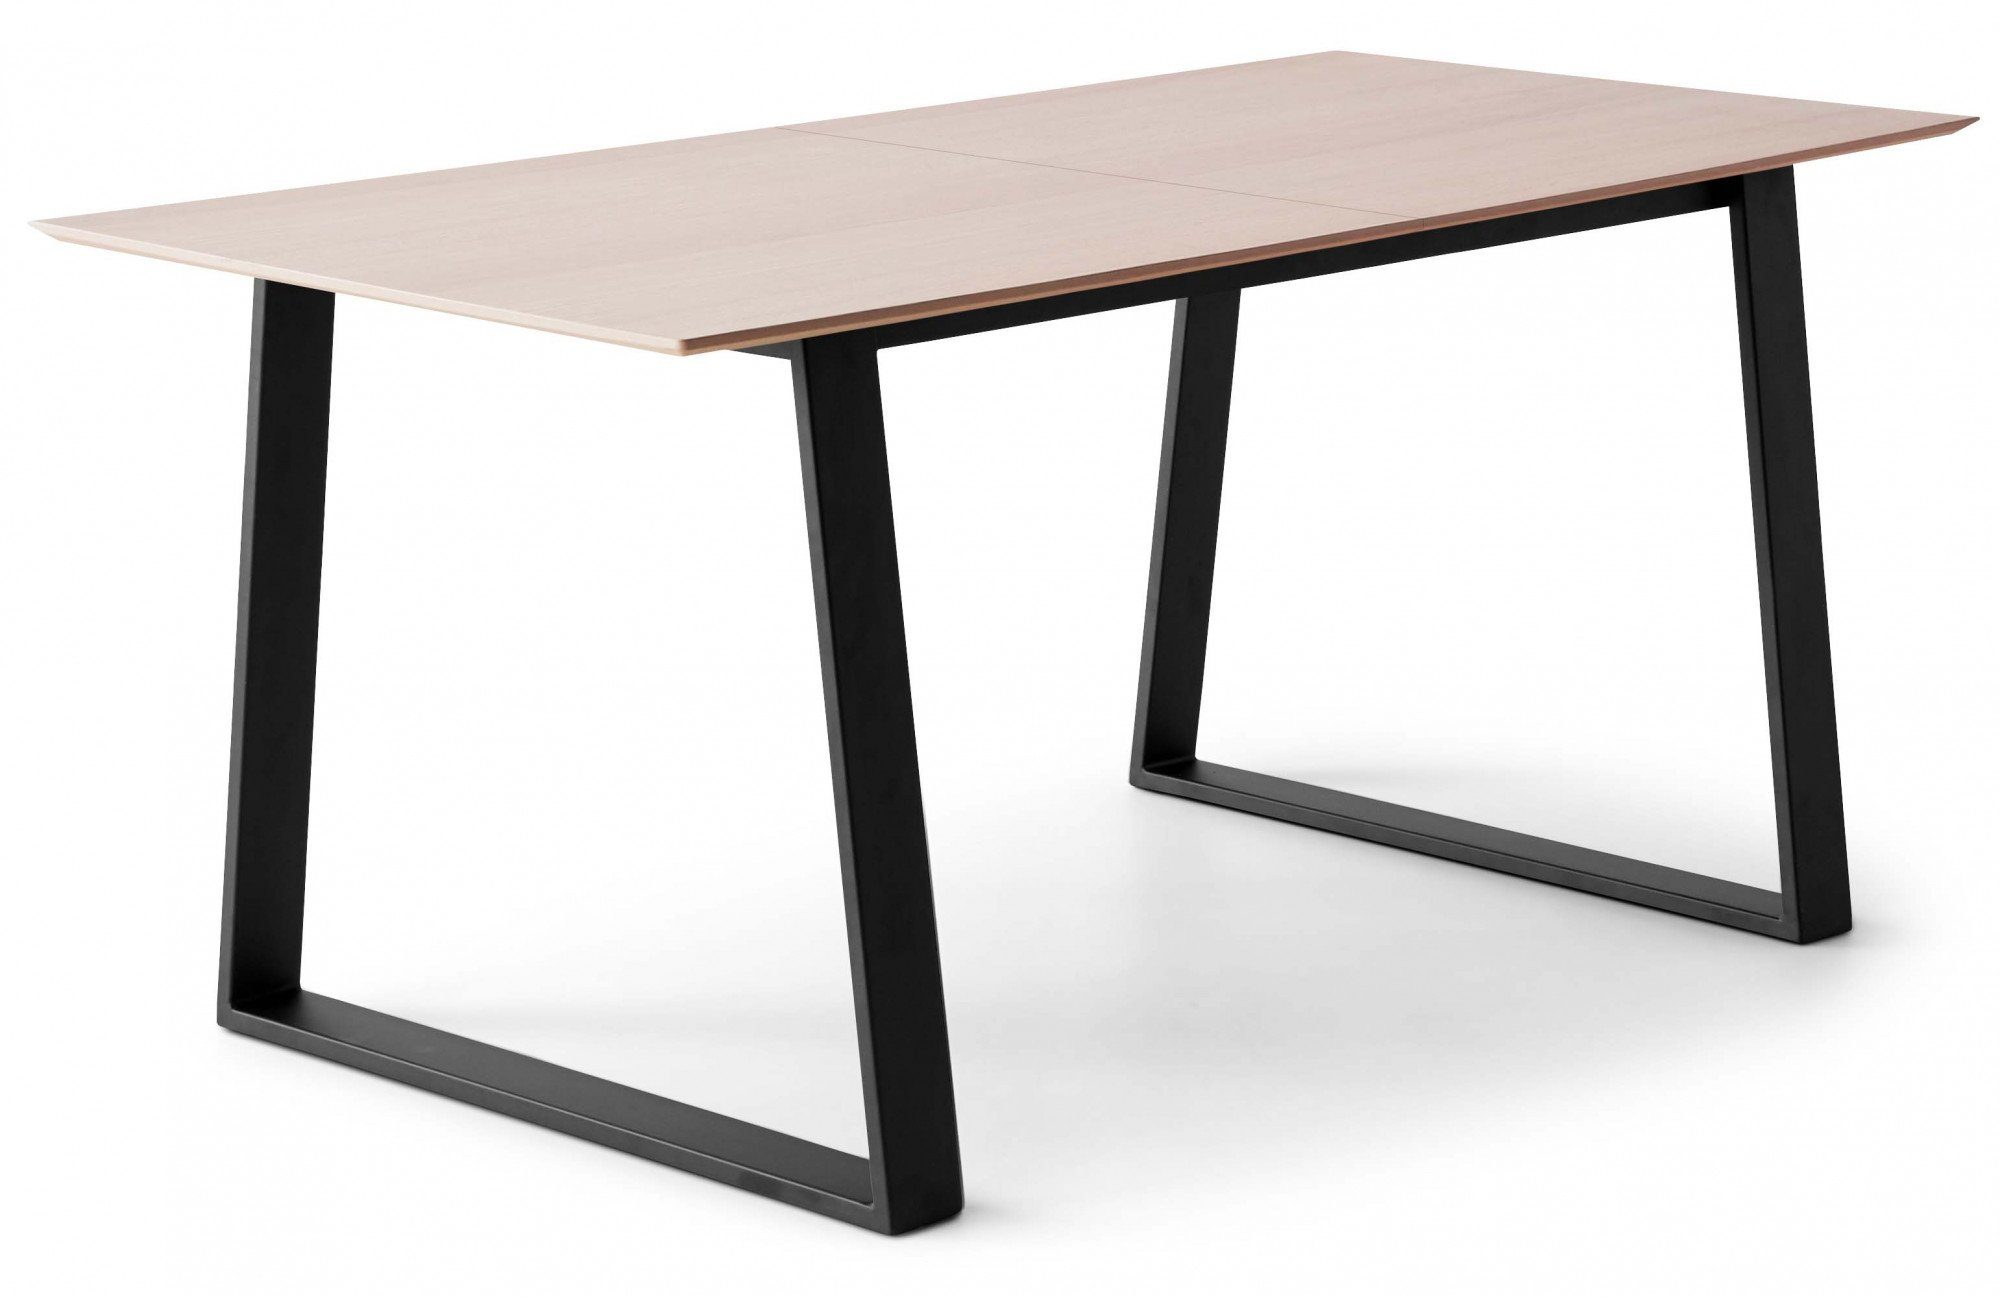 Hammel Furniture Esstisch Meza by Hammel, rechteckige Tischplatte MDF,  Trapez Metallgestell, 2 Einlegeplatten